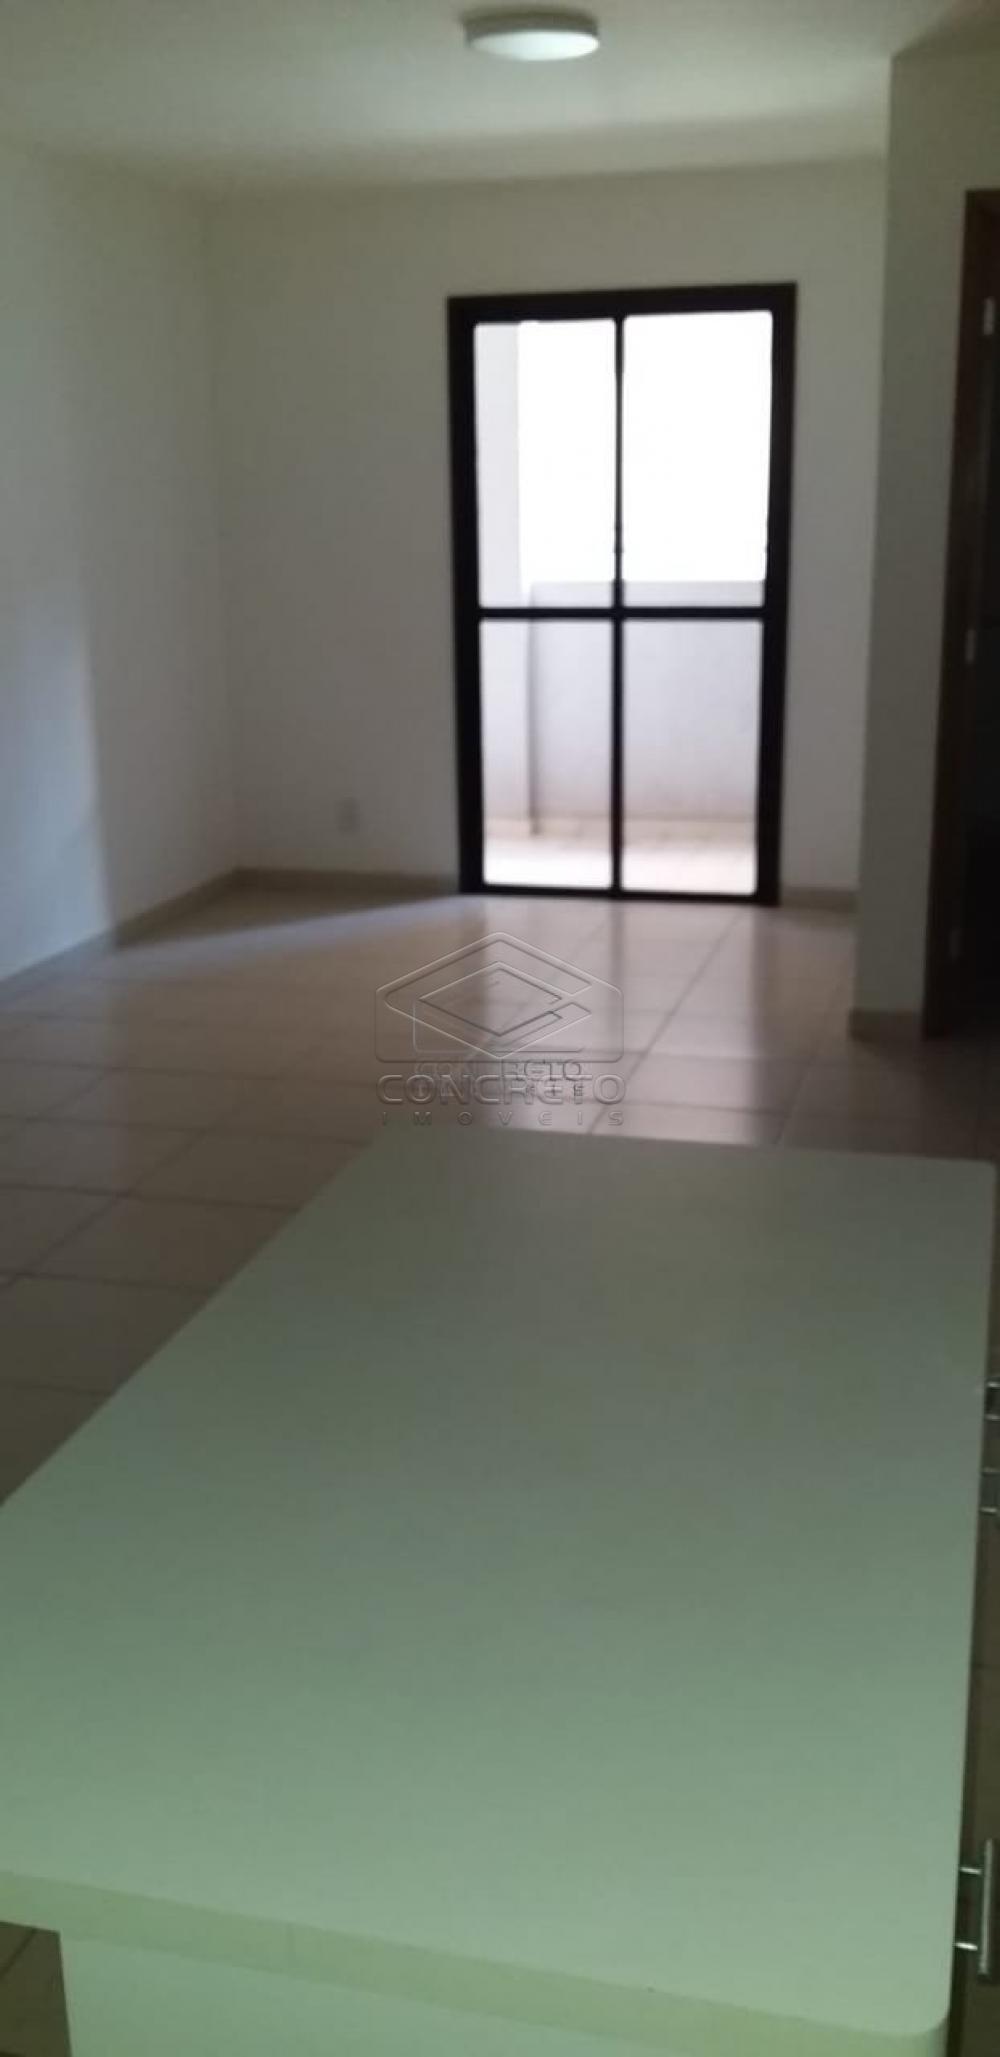 Alugar Apartamento / Padrão em Bauru R$ 1.550,00 - Foto 6